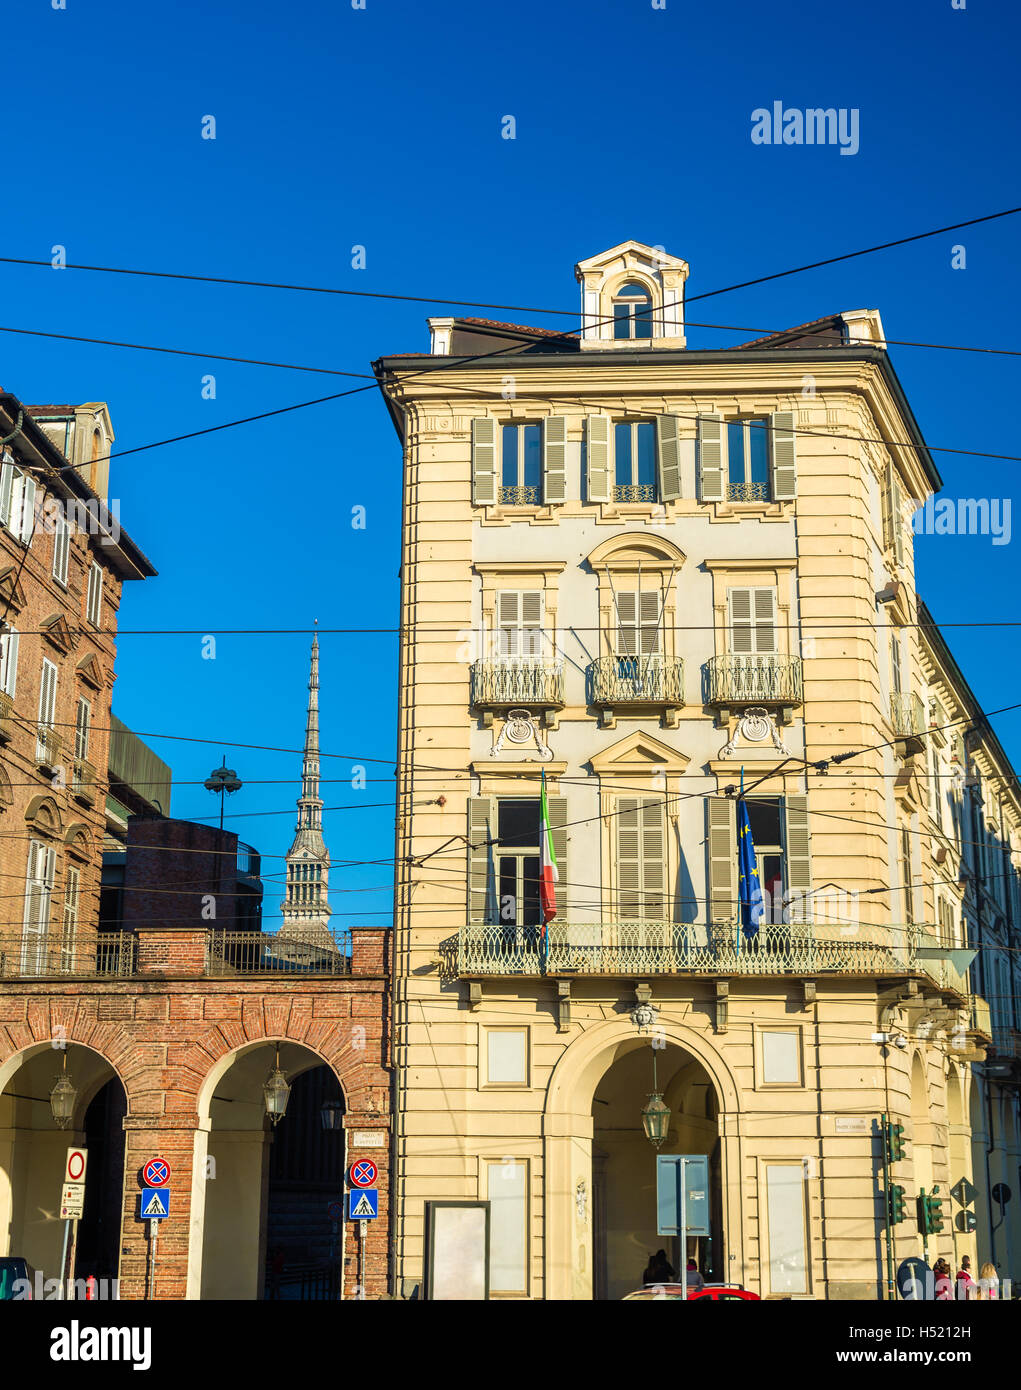 Les bureaux du gouvernement de Turin (Prefettura) - Italie Banque D'Images